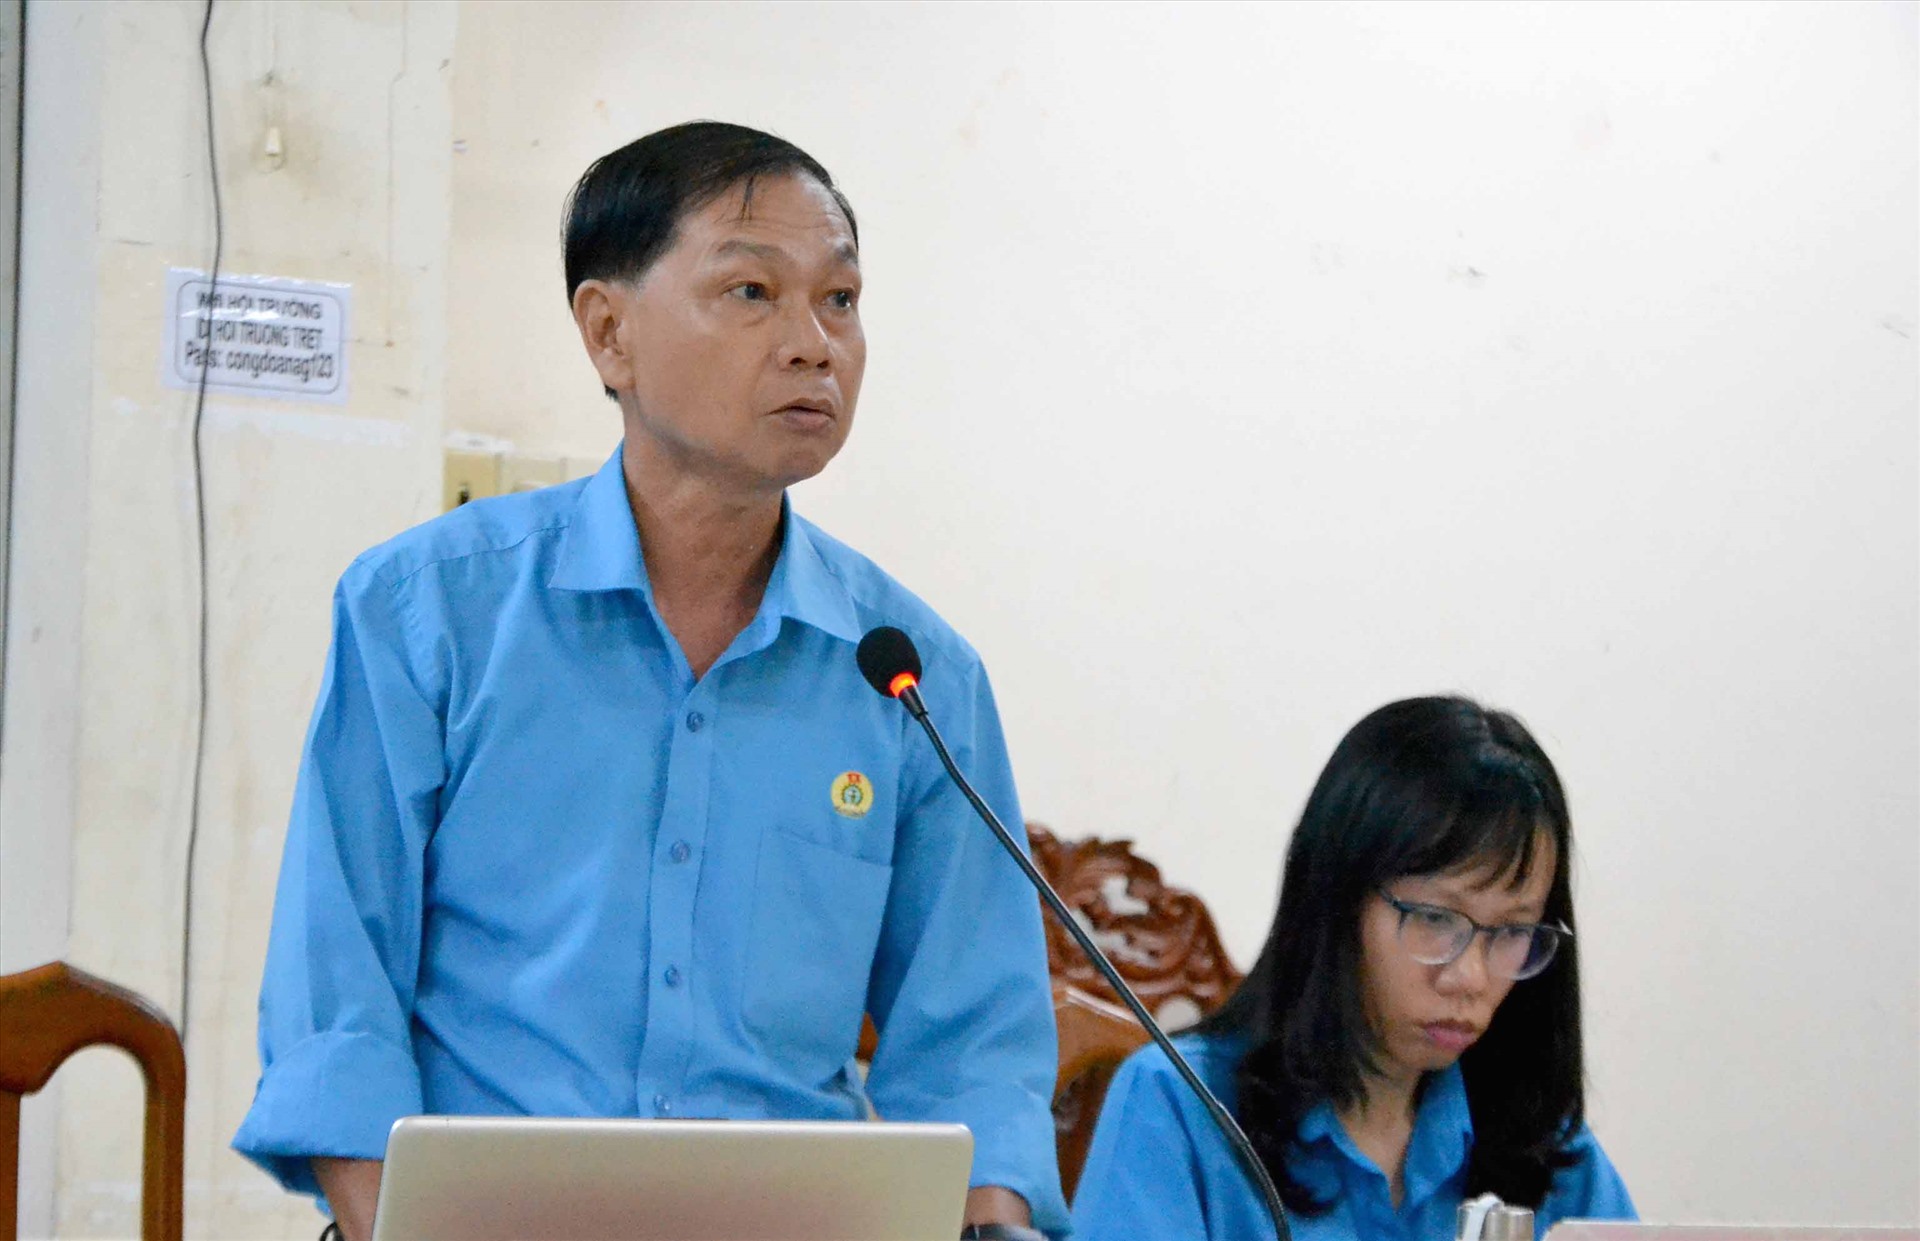 Ông Trần Lưu Phong, Chủ tịch Công đoàn các khu công nghiệp tỉnh An Giang phát biểu tại hội nghị. Ảnh: Lâm Điền